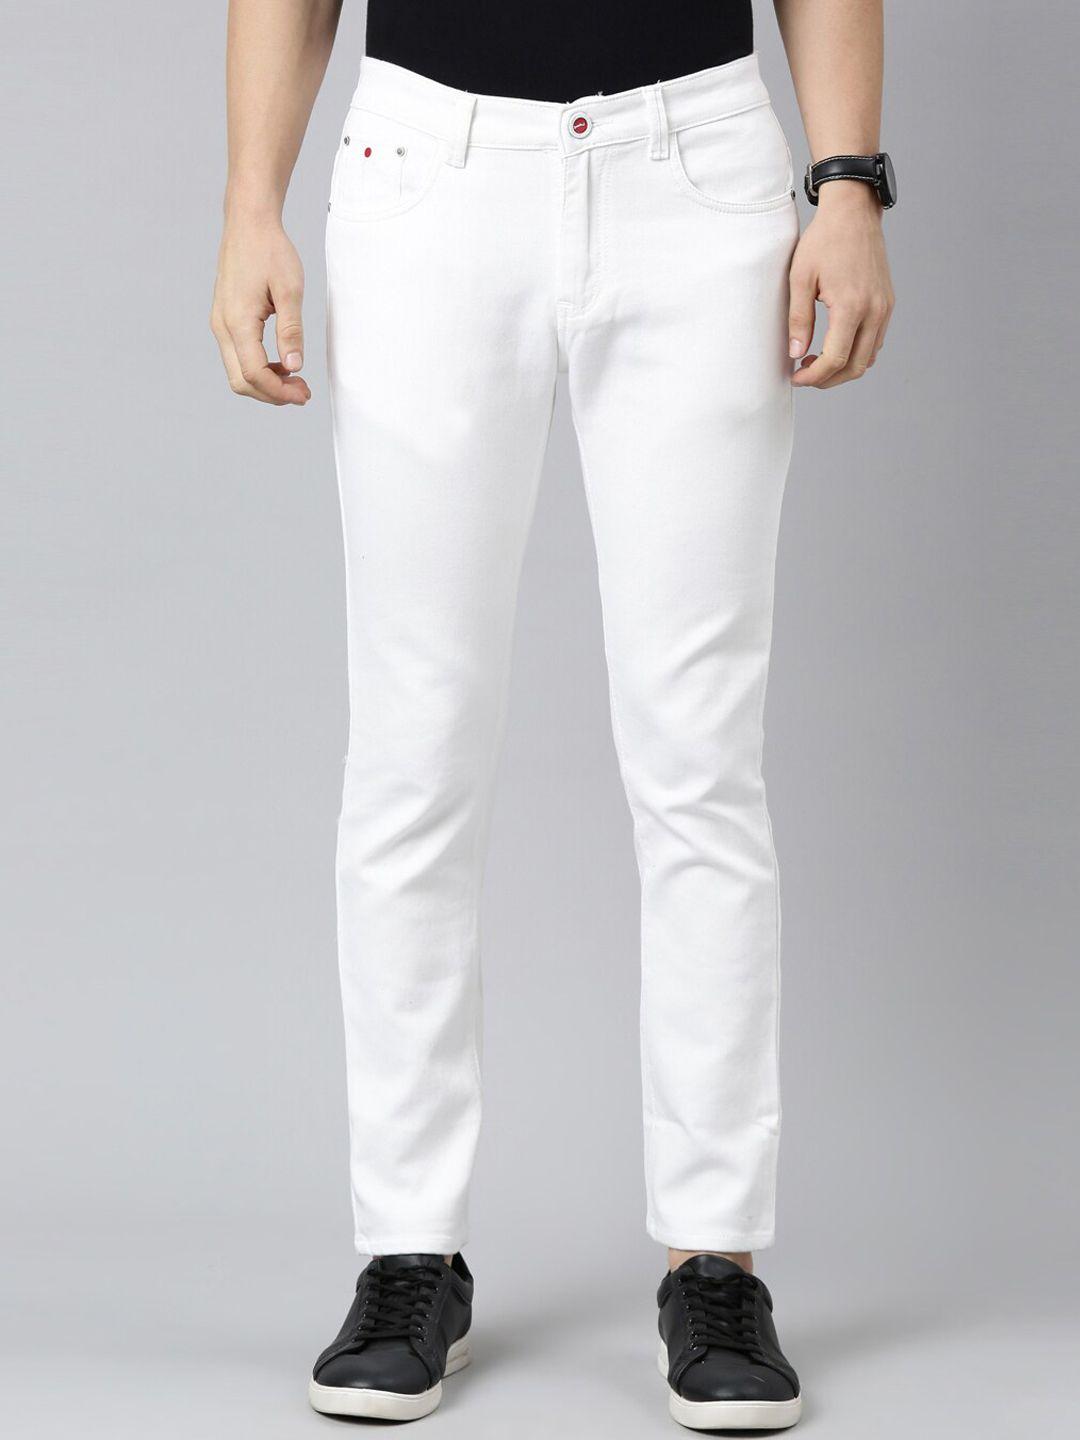 cinocci-men-white-stretchable-cotton-jeans